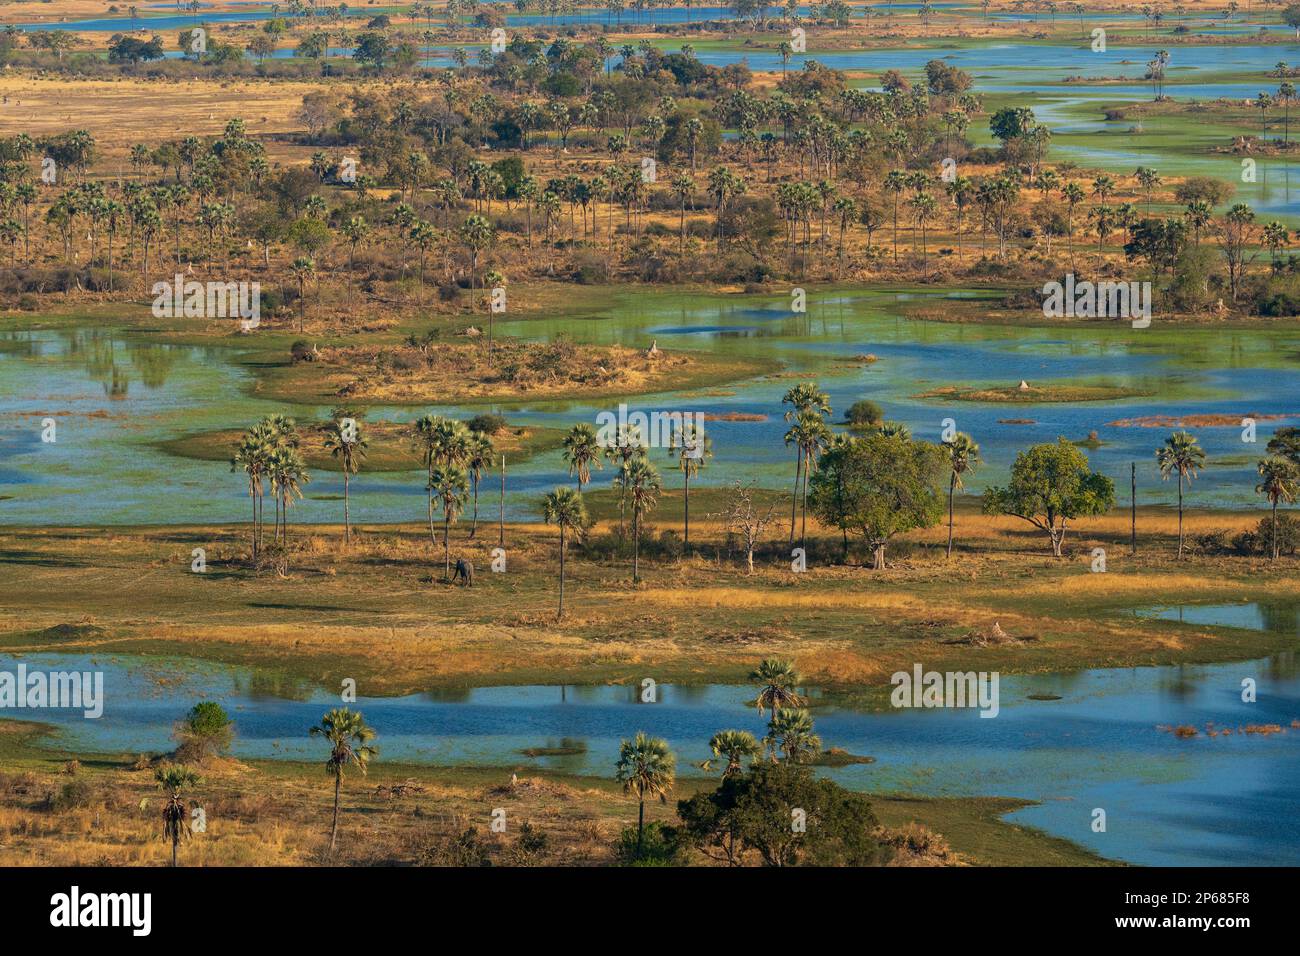 Veduta aerea del Delta dell'Okavango, patrimonio dell'umanità dell'UNESCO, Botswana, Africa Foto Stock